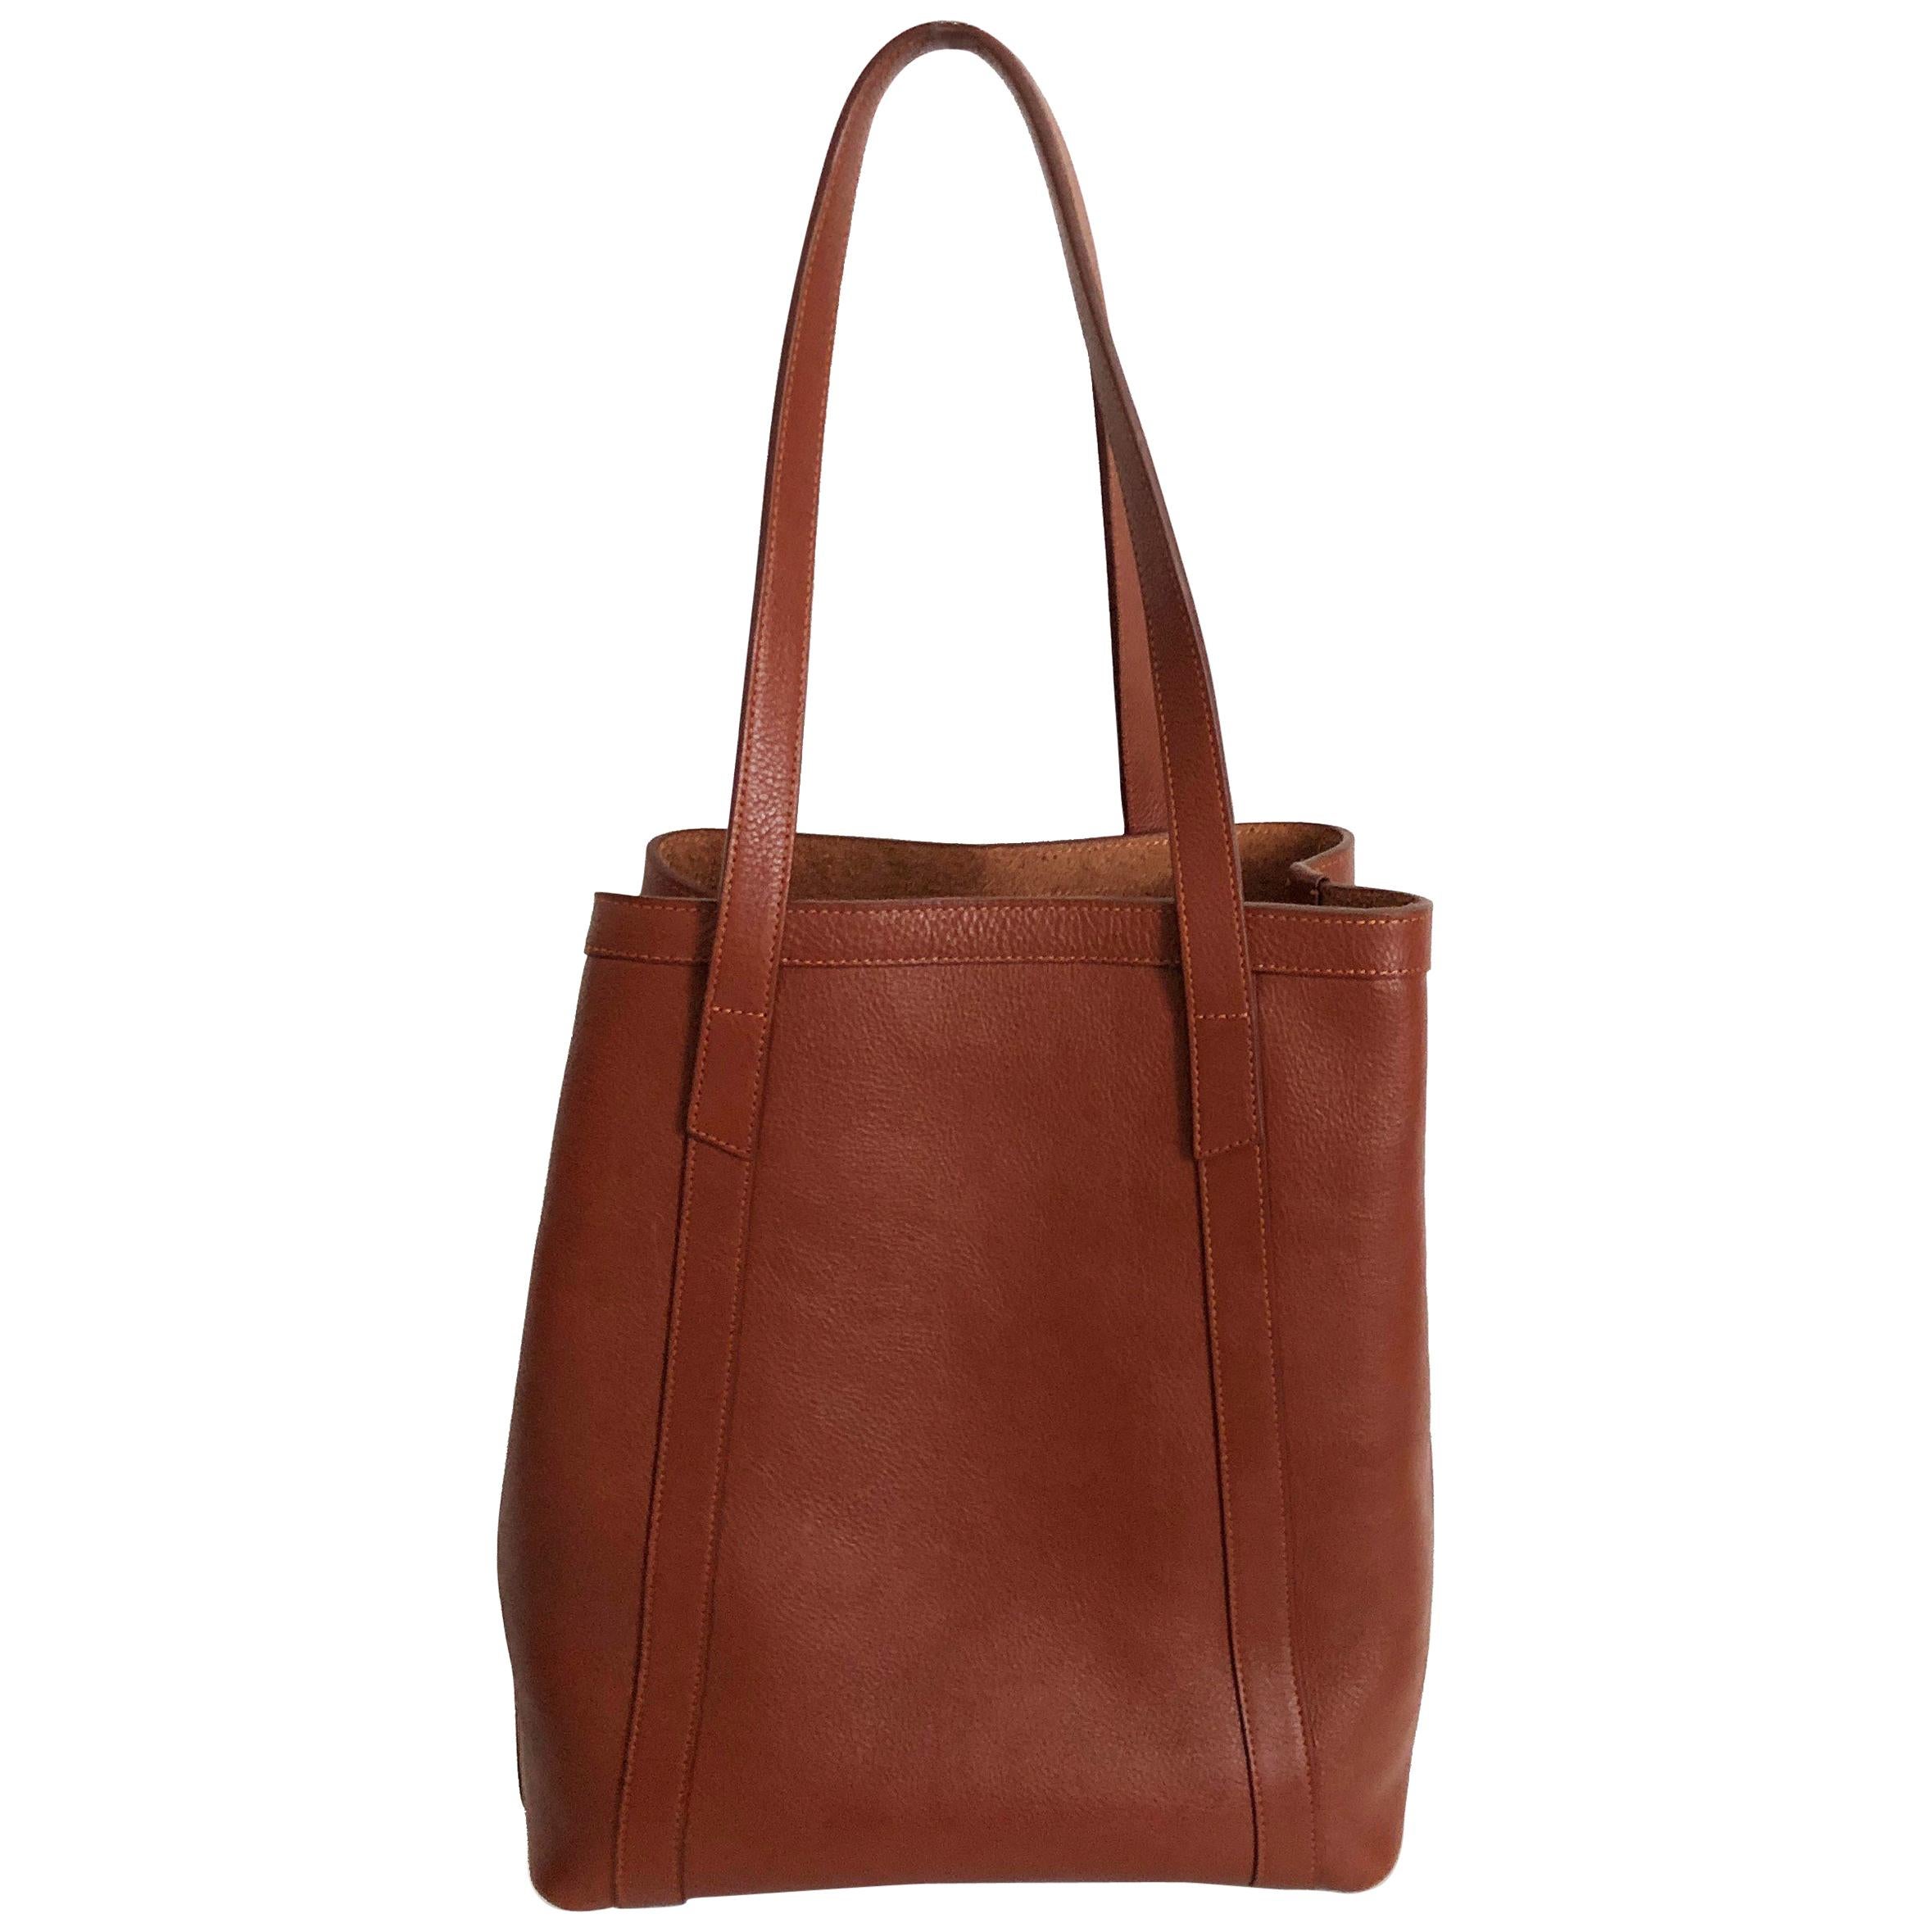 Lotuff Leather Angle Tote Bag Saddle Tan XL Travel Bag 